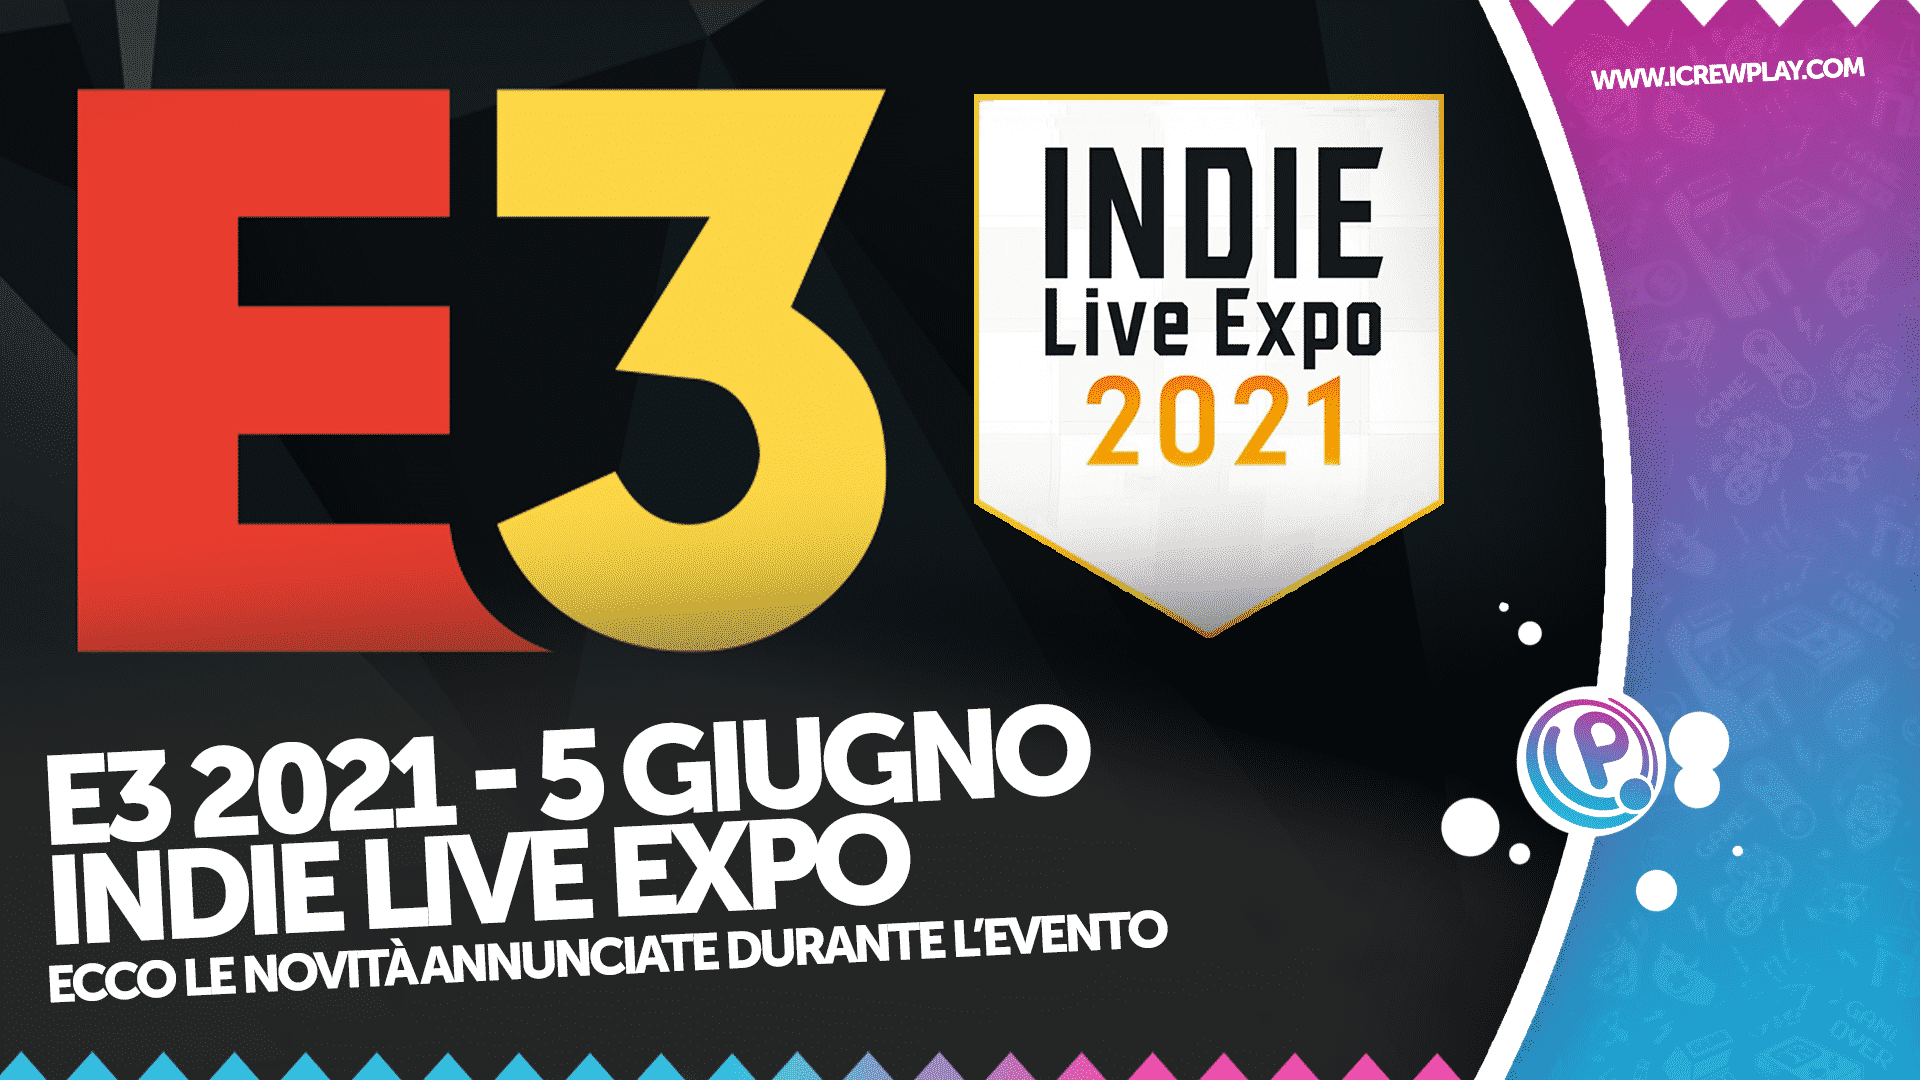 E3 2021, Indie Live Expo, E3 2021 Indie Live Expo, Indie Live Expo Annunci, Giochi Indie Live Expo Palworld